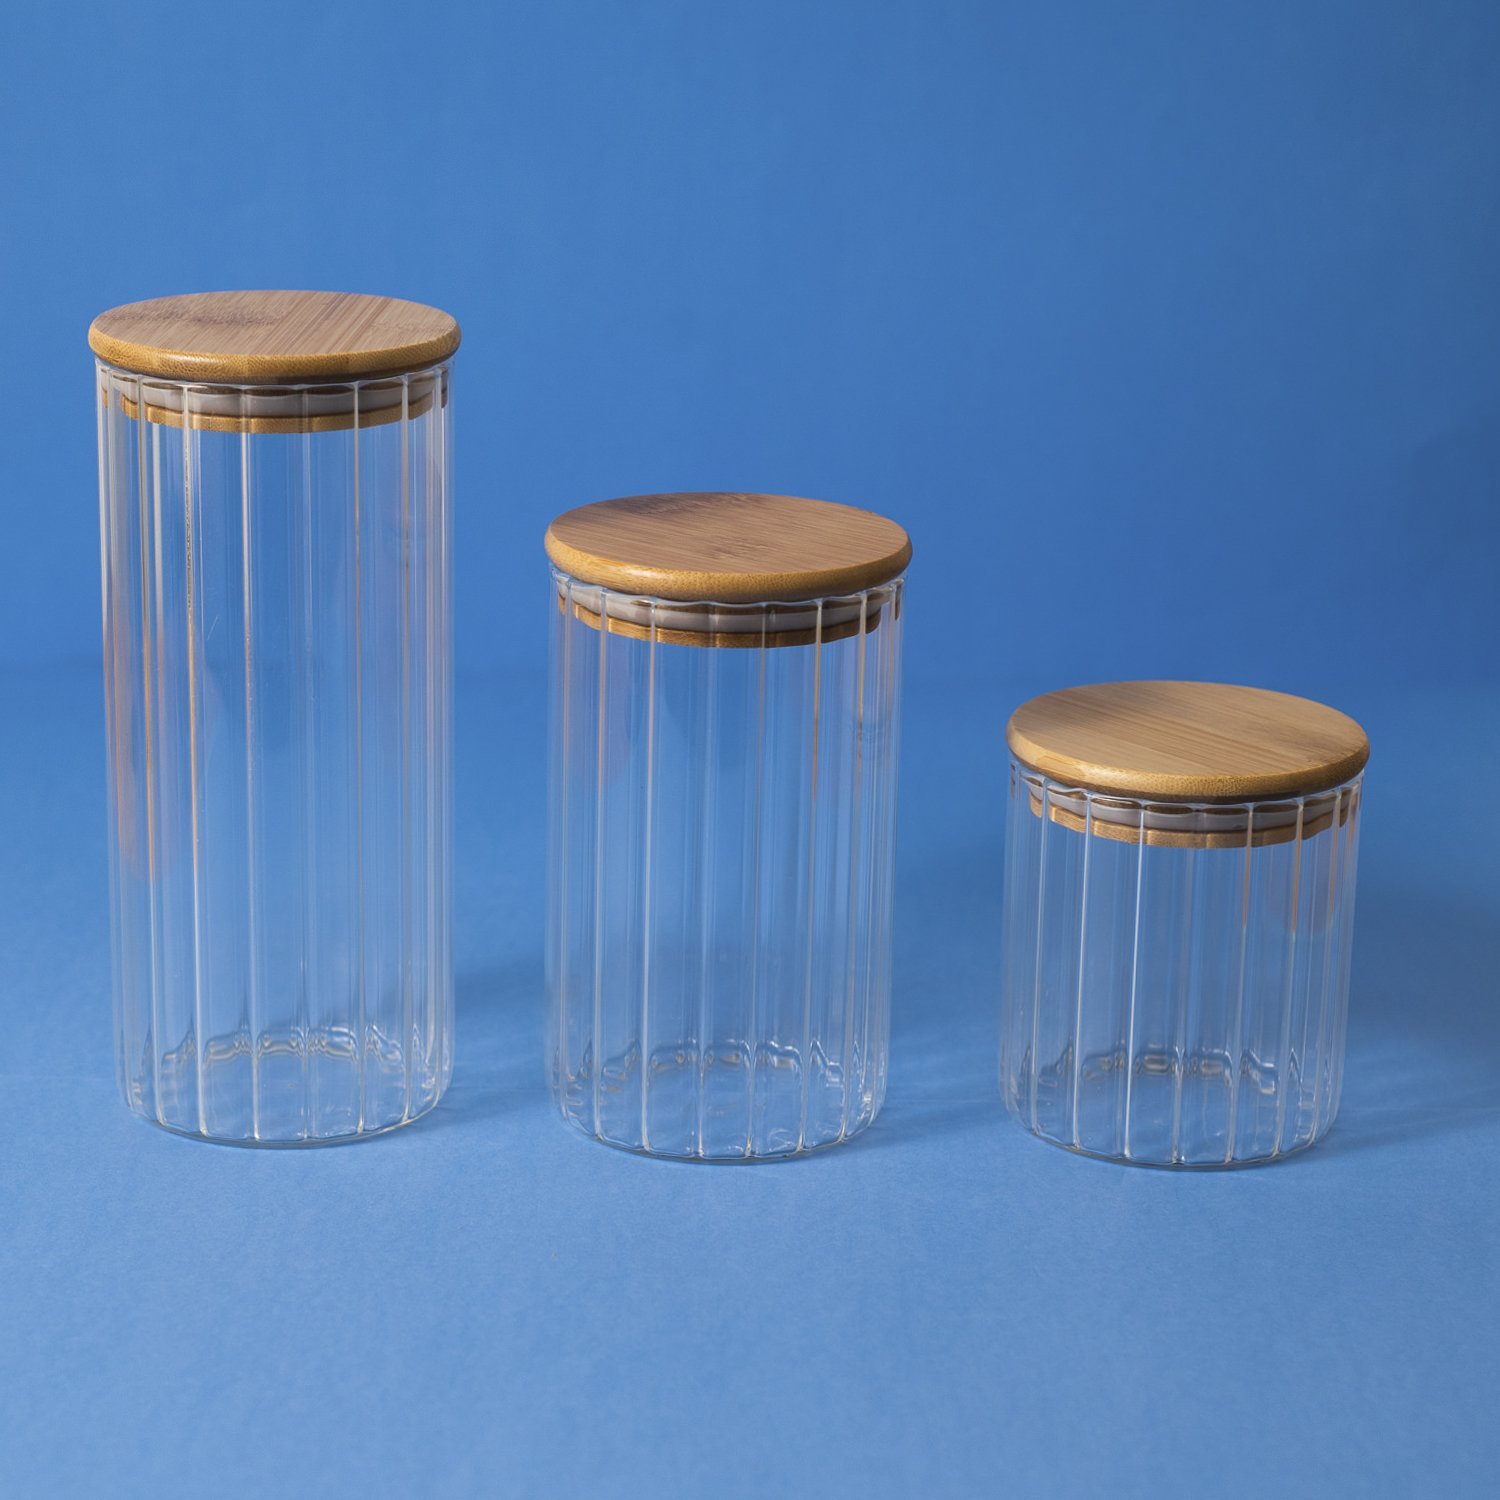 Pote 800ml de vidro canelado com tampa de bambu de mantimento - Oikos - 6